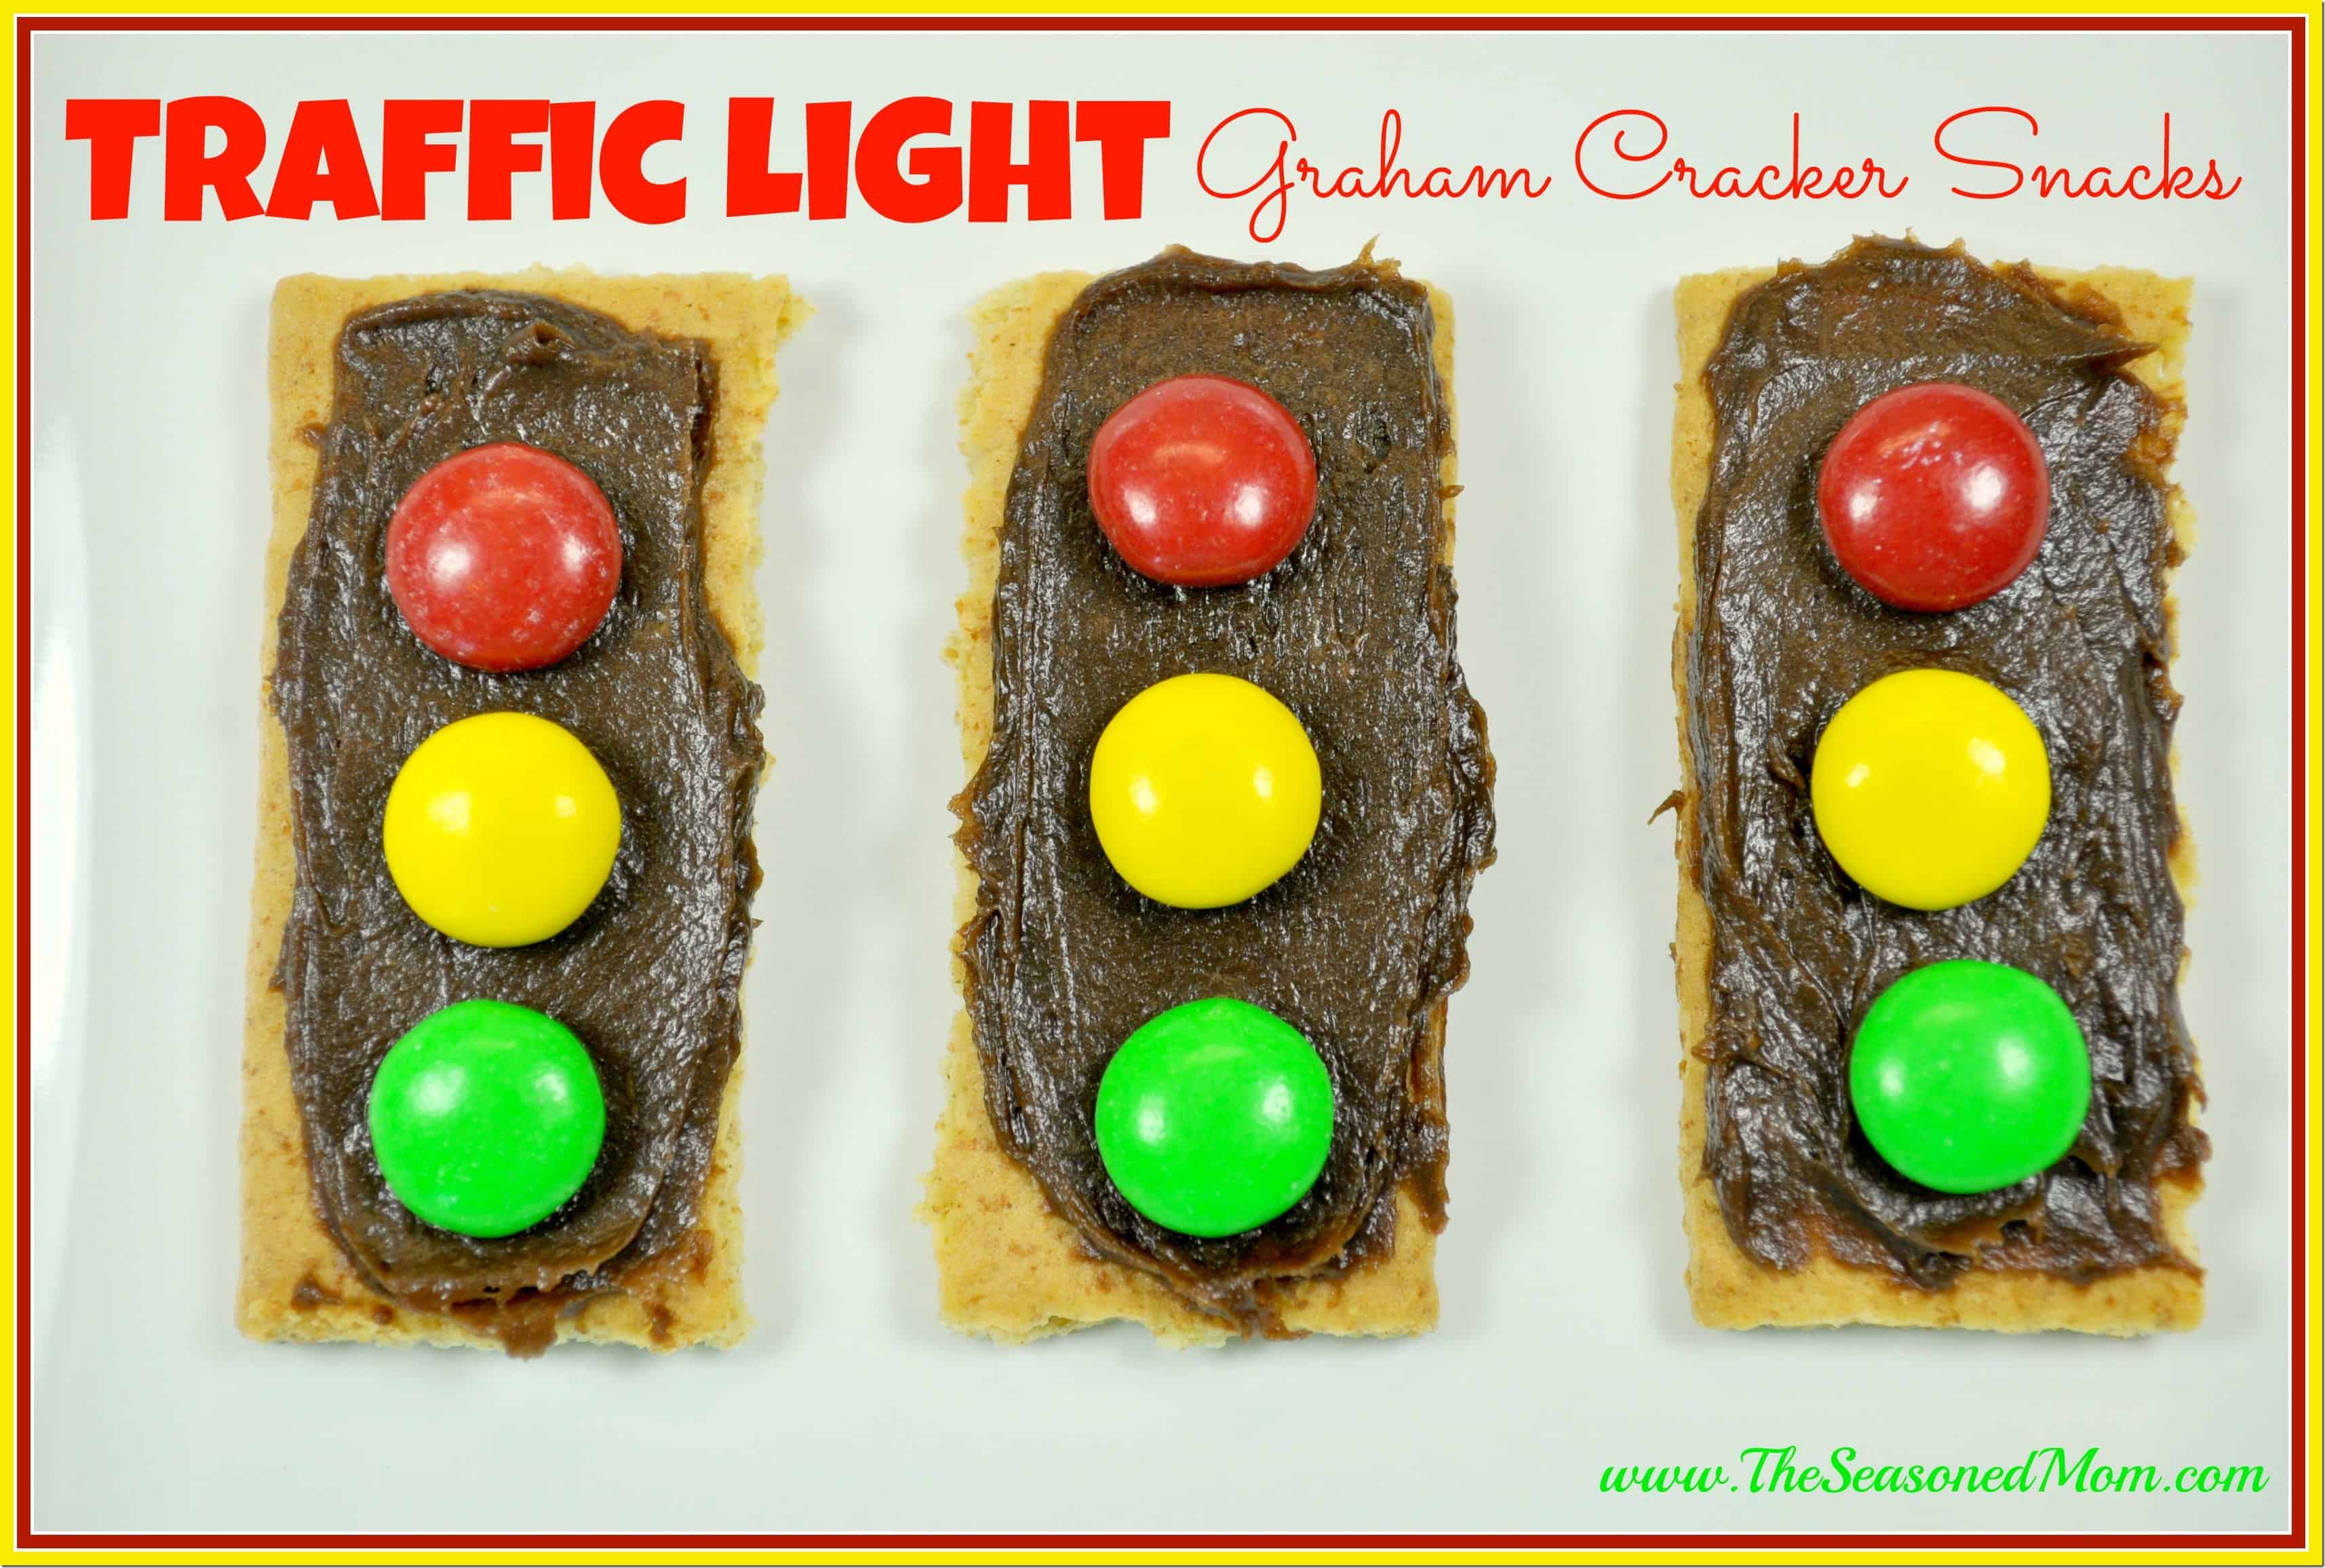 Traffic Light Graham Cracker Snacks